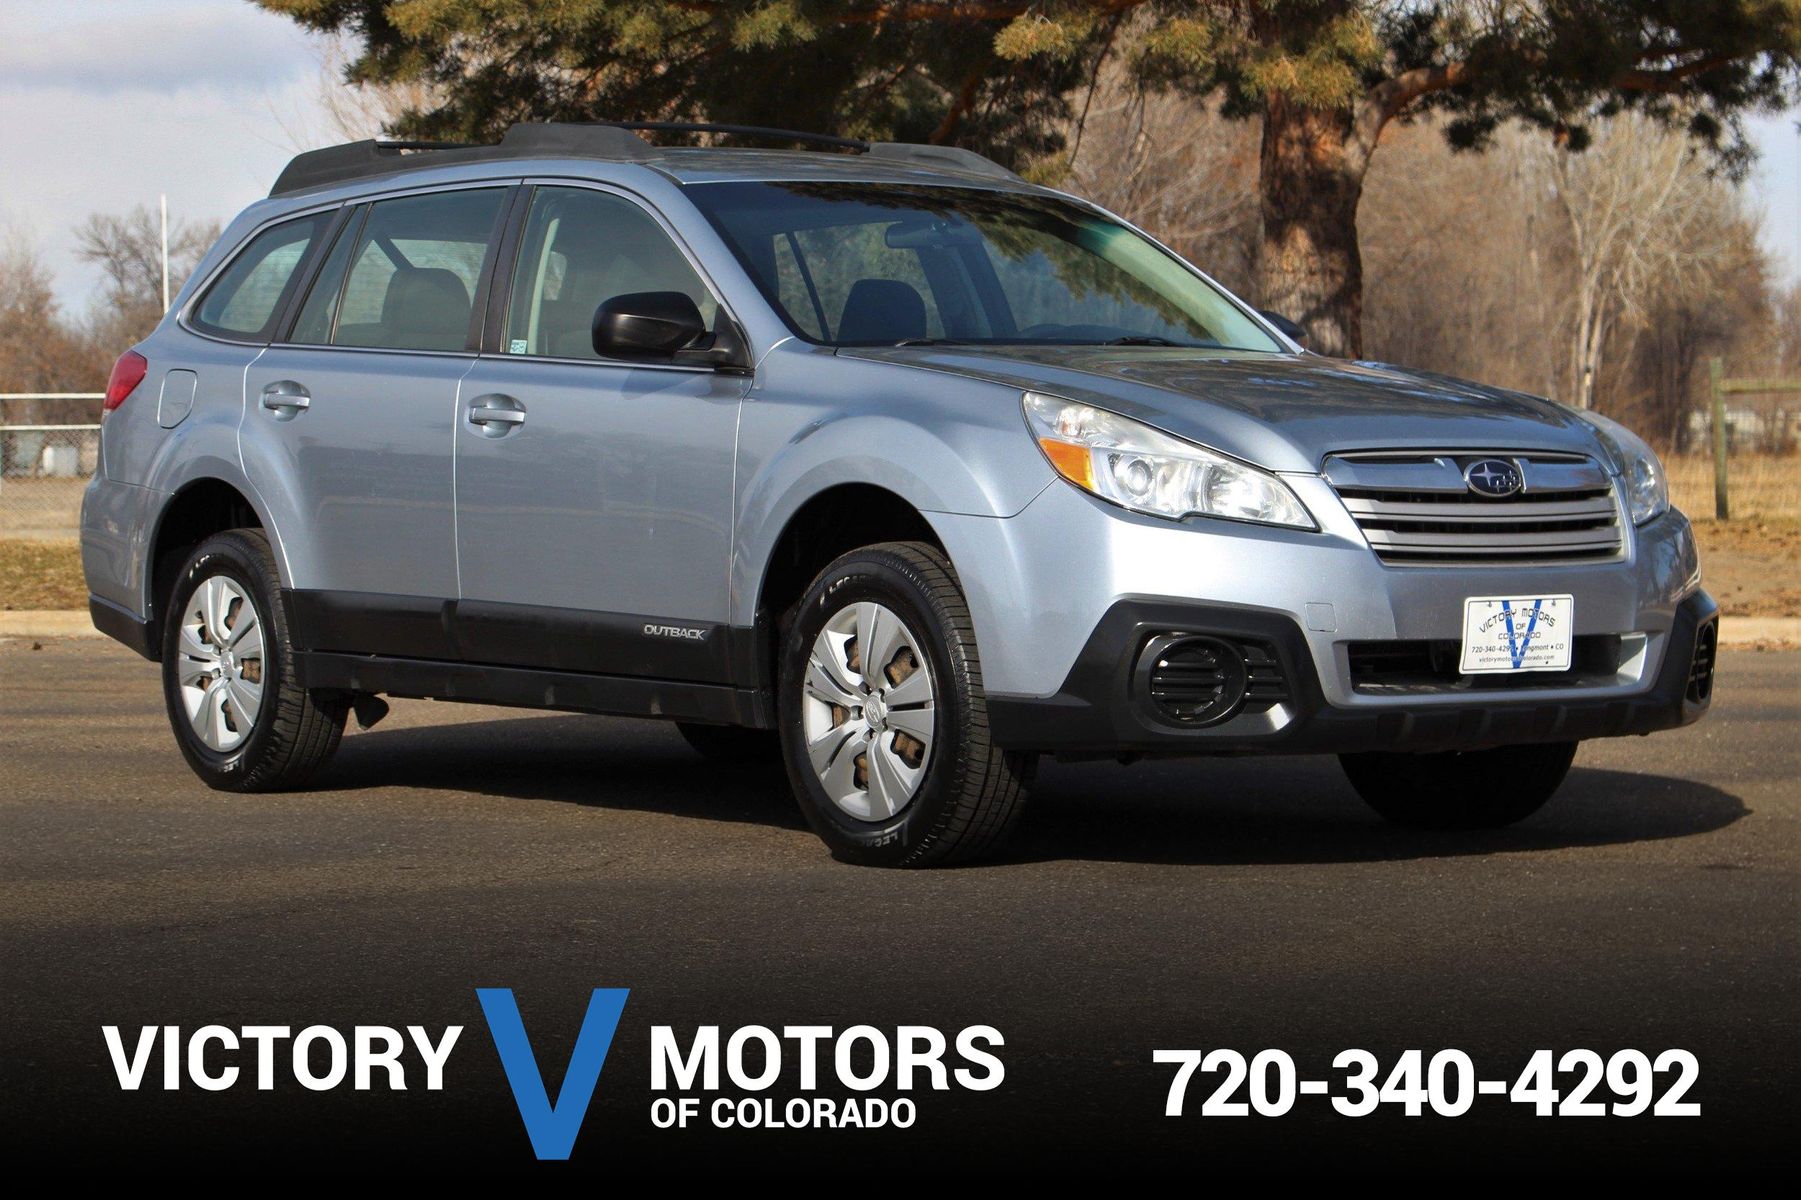 2013 Subaru Outback 2.5i Victory Motors of Colorado